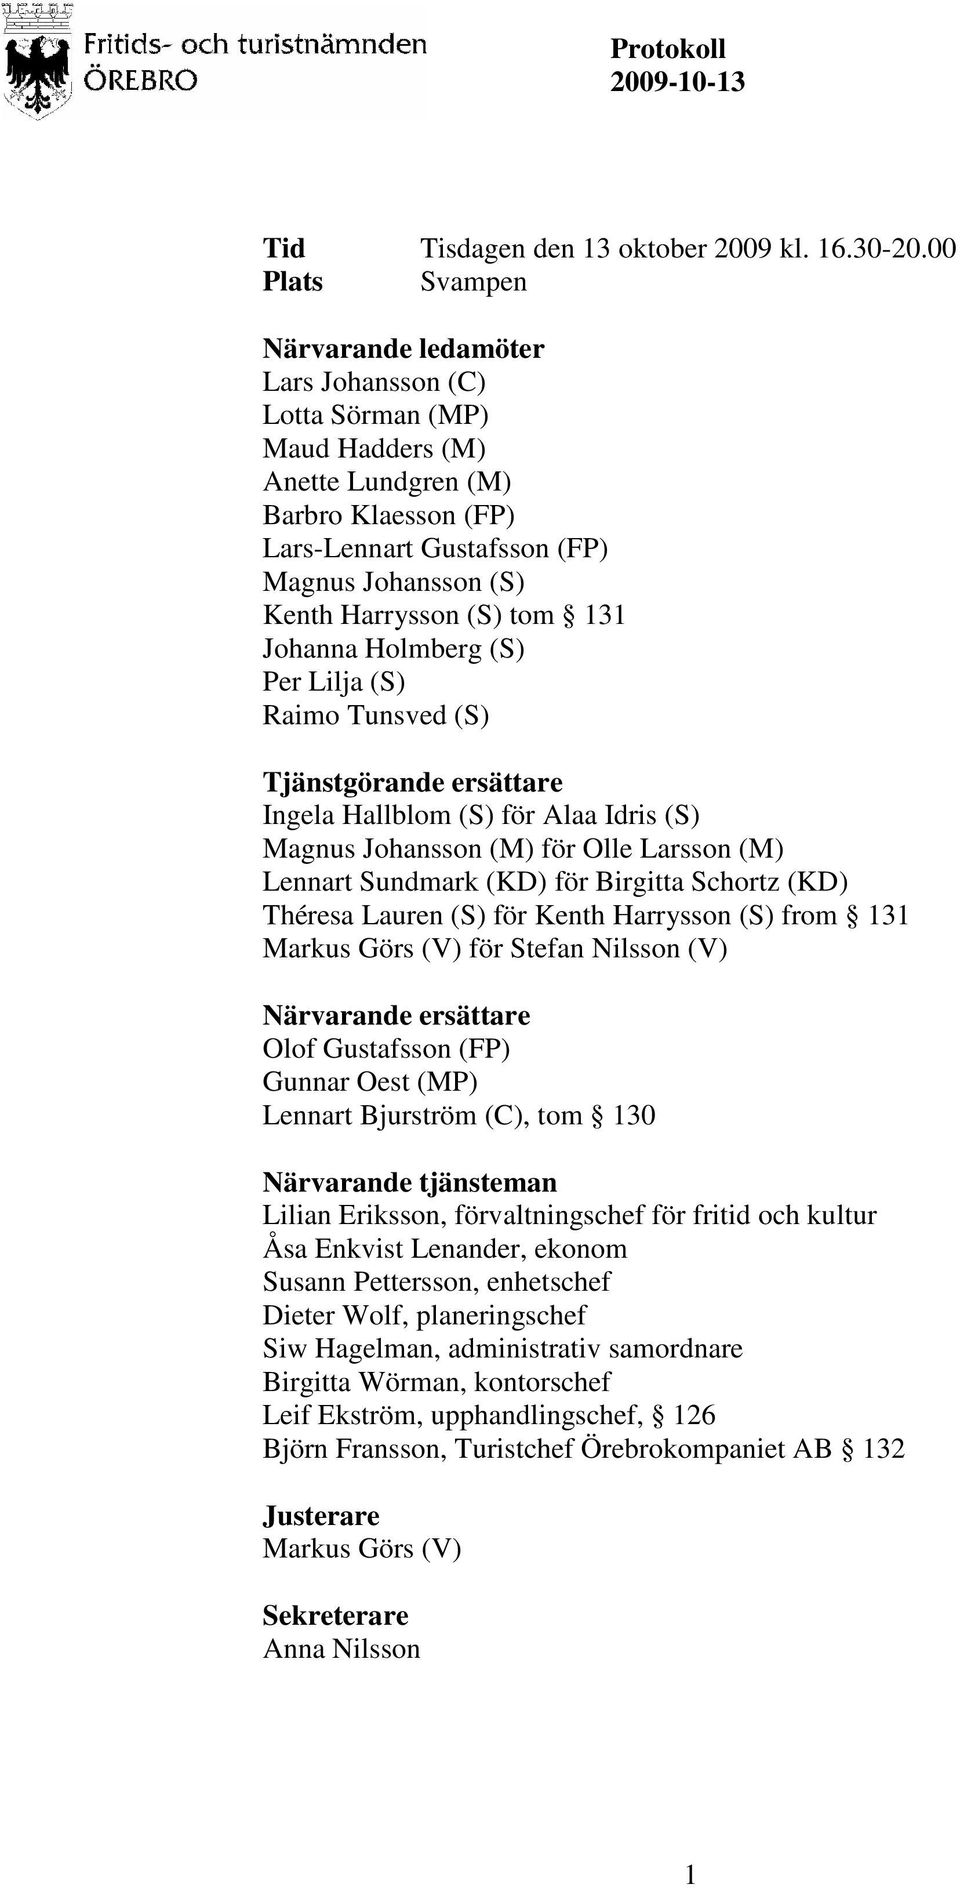 (S) tom 131 Johanna Holmberg (S) Per Lilja (S) Raimo Tunsved (S) Tjänstgörande ersättare Ingela Hallblom (S) för Alaa Idris (S) Magnus Johansson (M) för Olle Larsson (M) Lennart Sundmark (KD) för